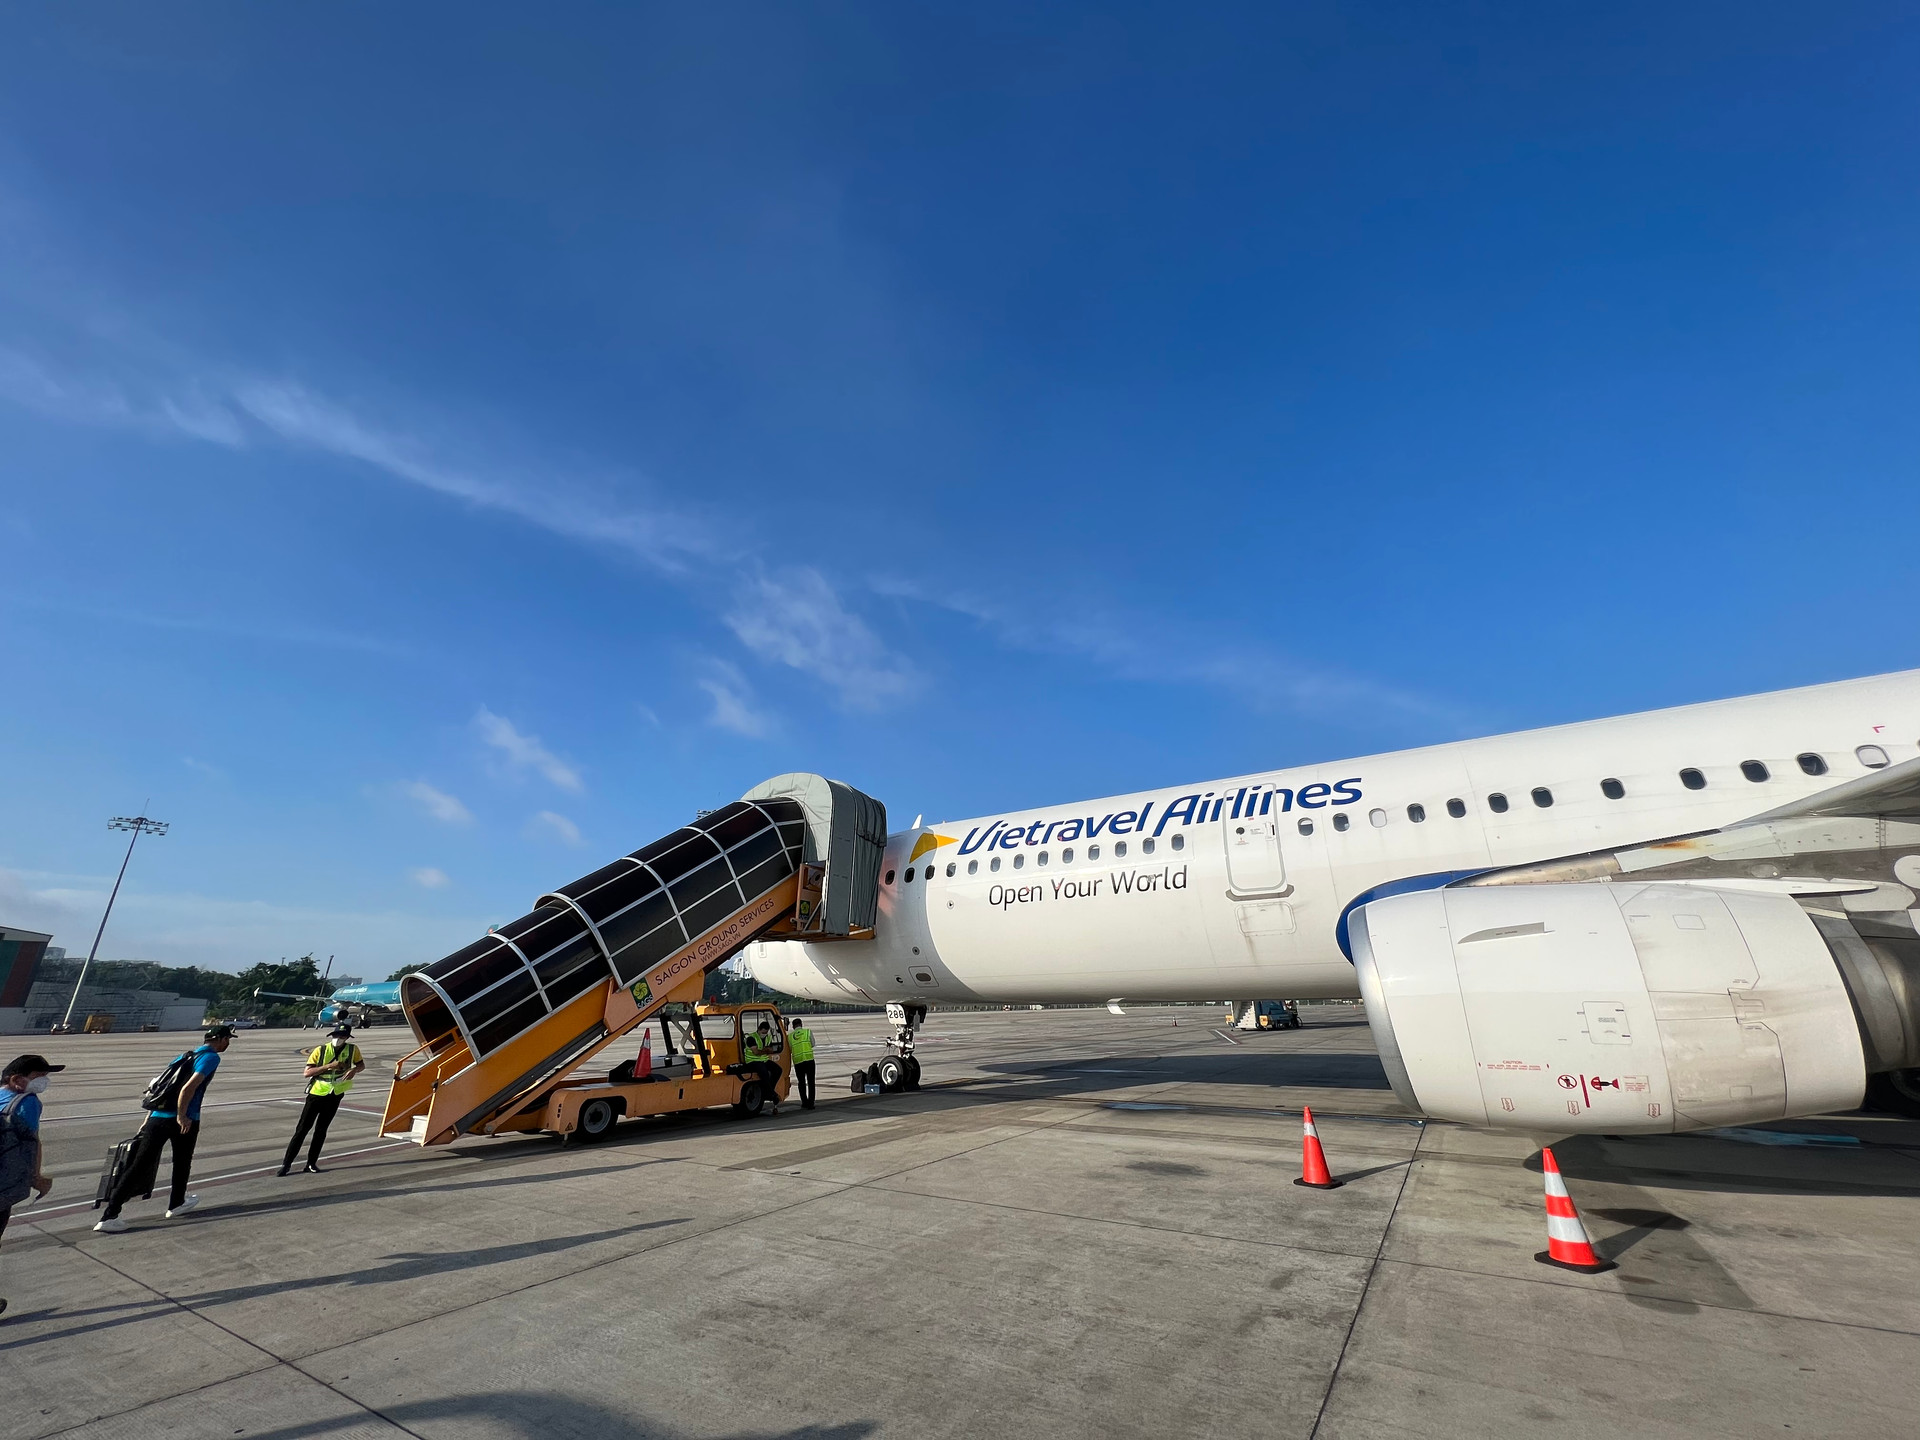 Vietravel Airlines có lãnh đạo mới sau khi phó TGĐ sang Bamboo Airways